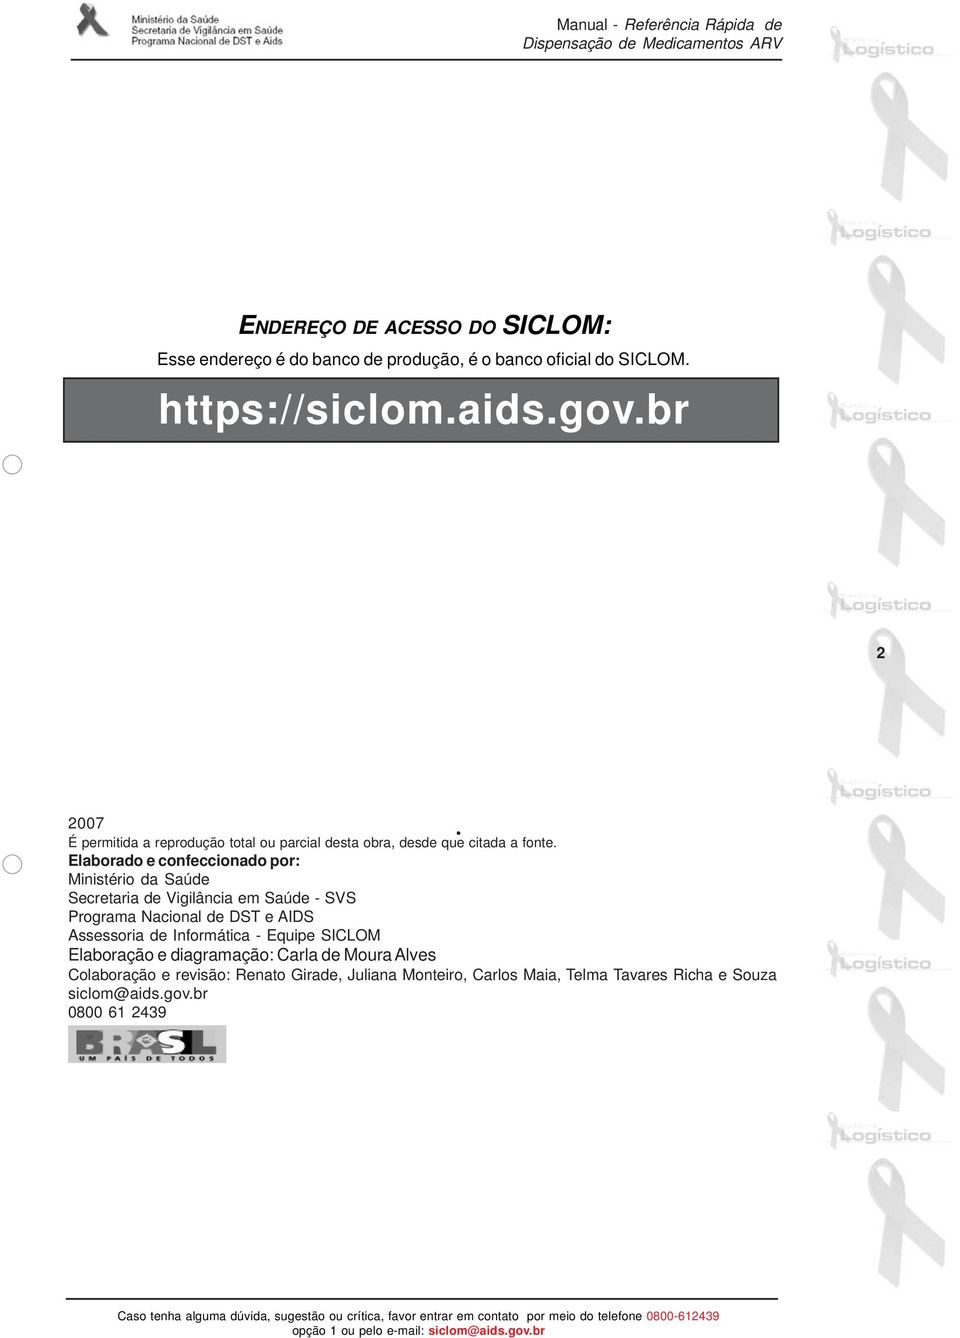 Elaborado e confeccionado por: Ministério da Saúde Secretaria de Vigilância em Saúde - SVS Programa Nacional de DST e AIDS Assessoria de